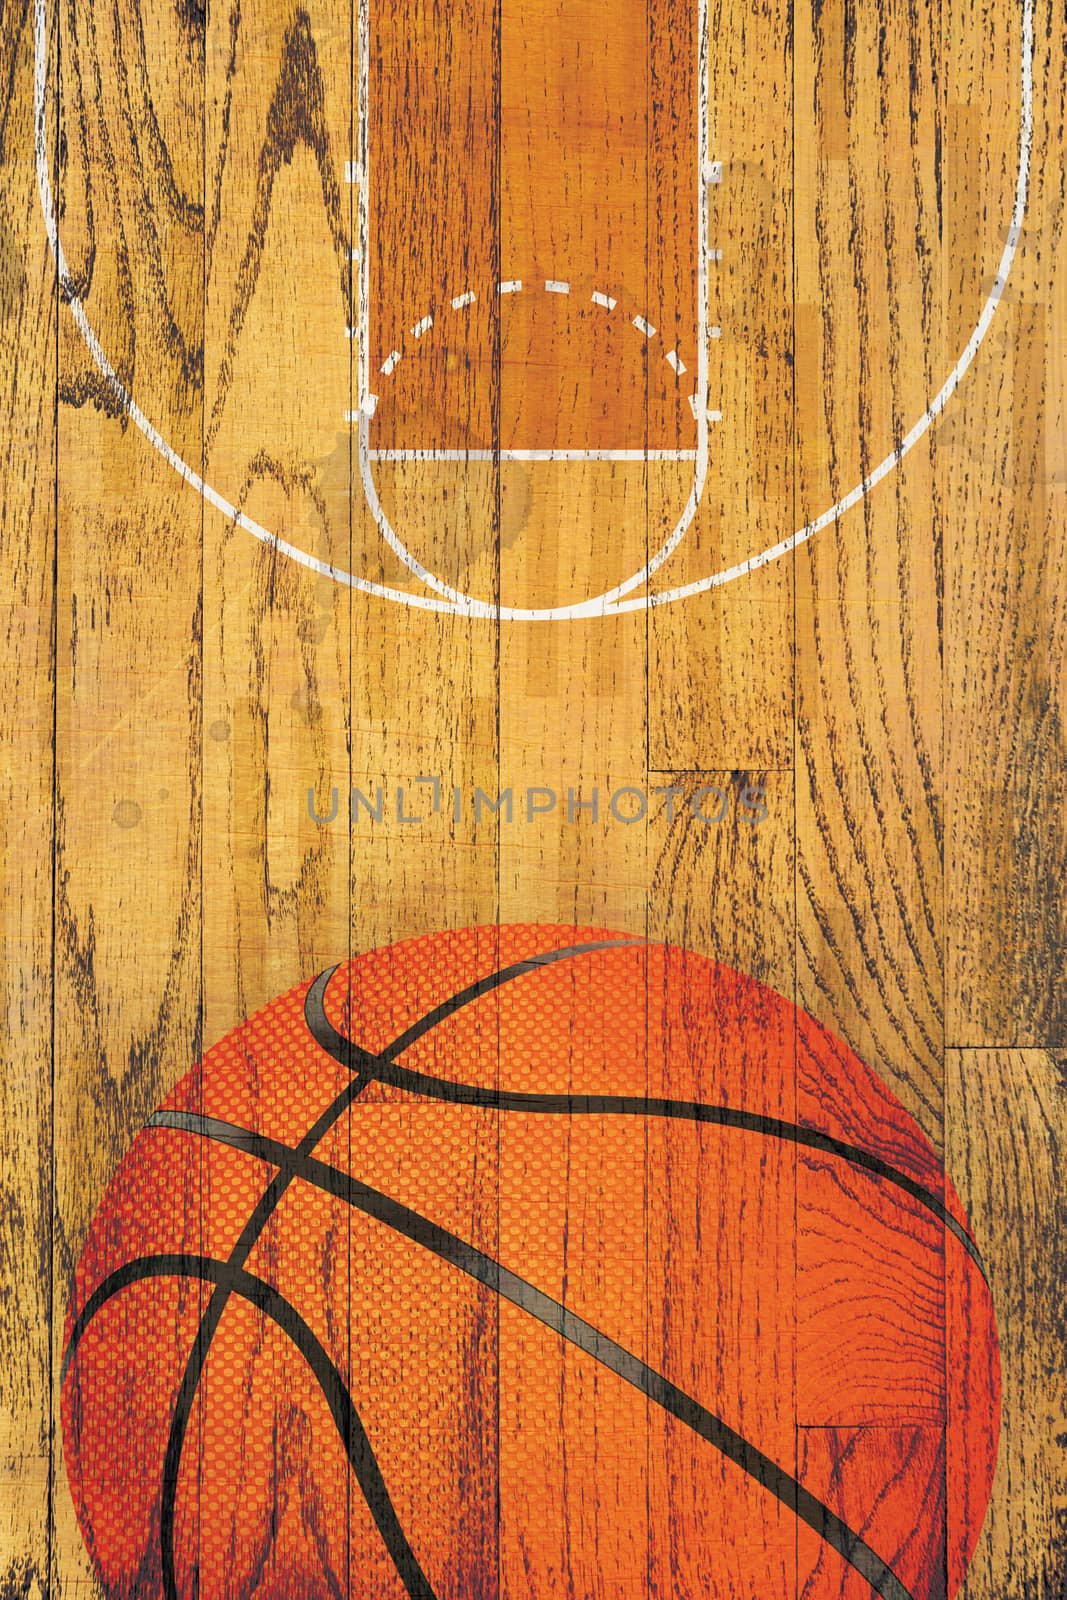 Vintage Basketball Hardwood Floor Background by enterlinedesign